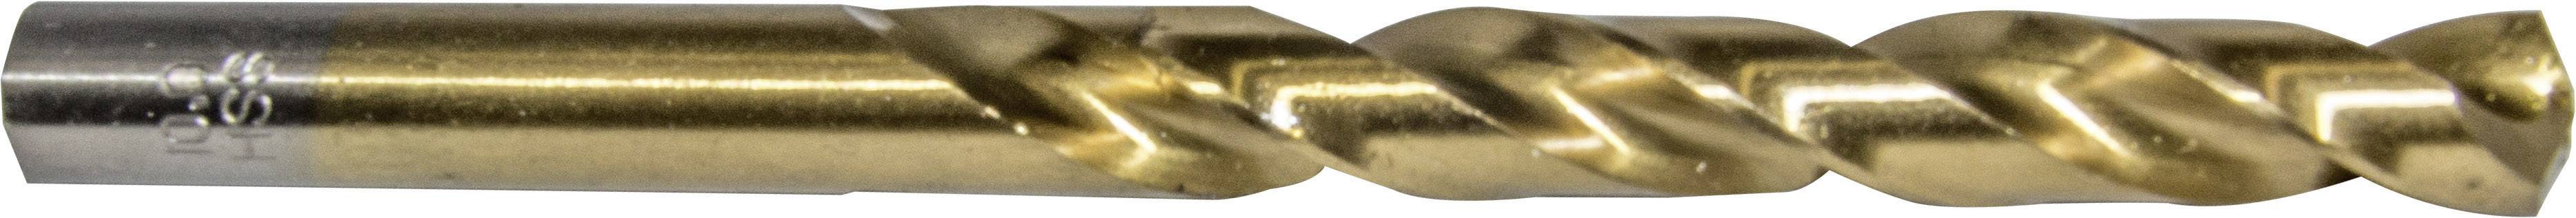 HELLER 26262 0 Metall-Spiralbohrer 1 Stück 4.5 mm Gesamtlänge 80 mm 1 St.